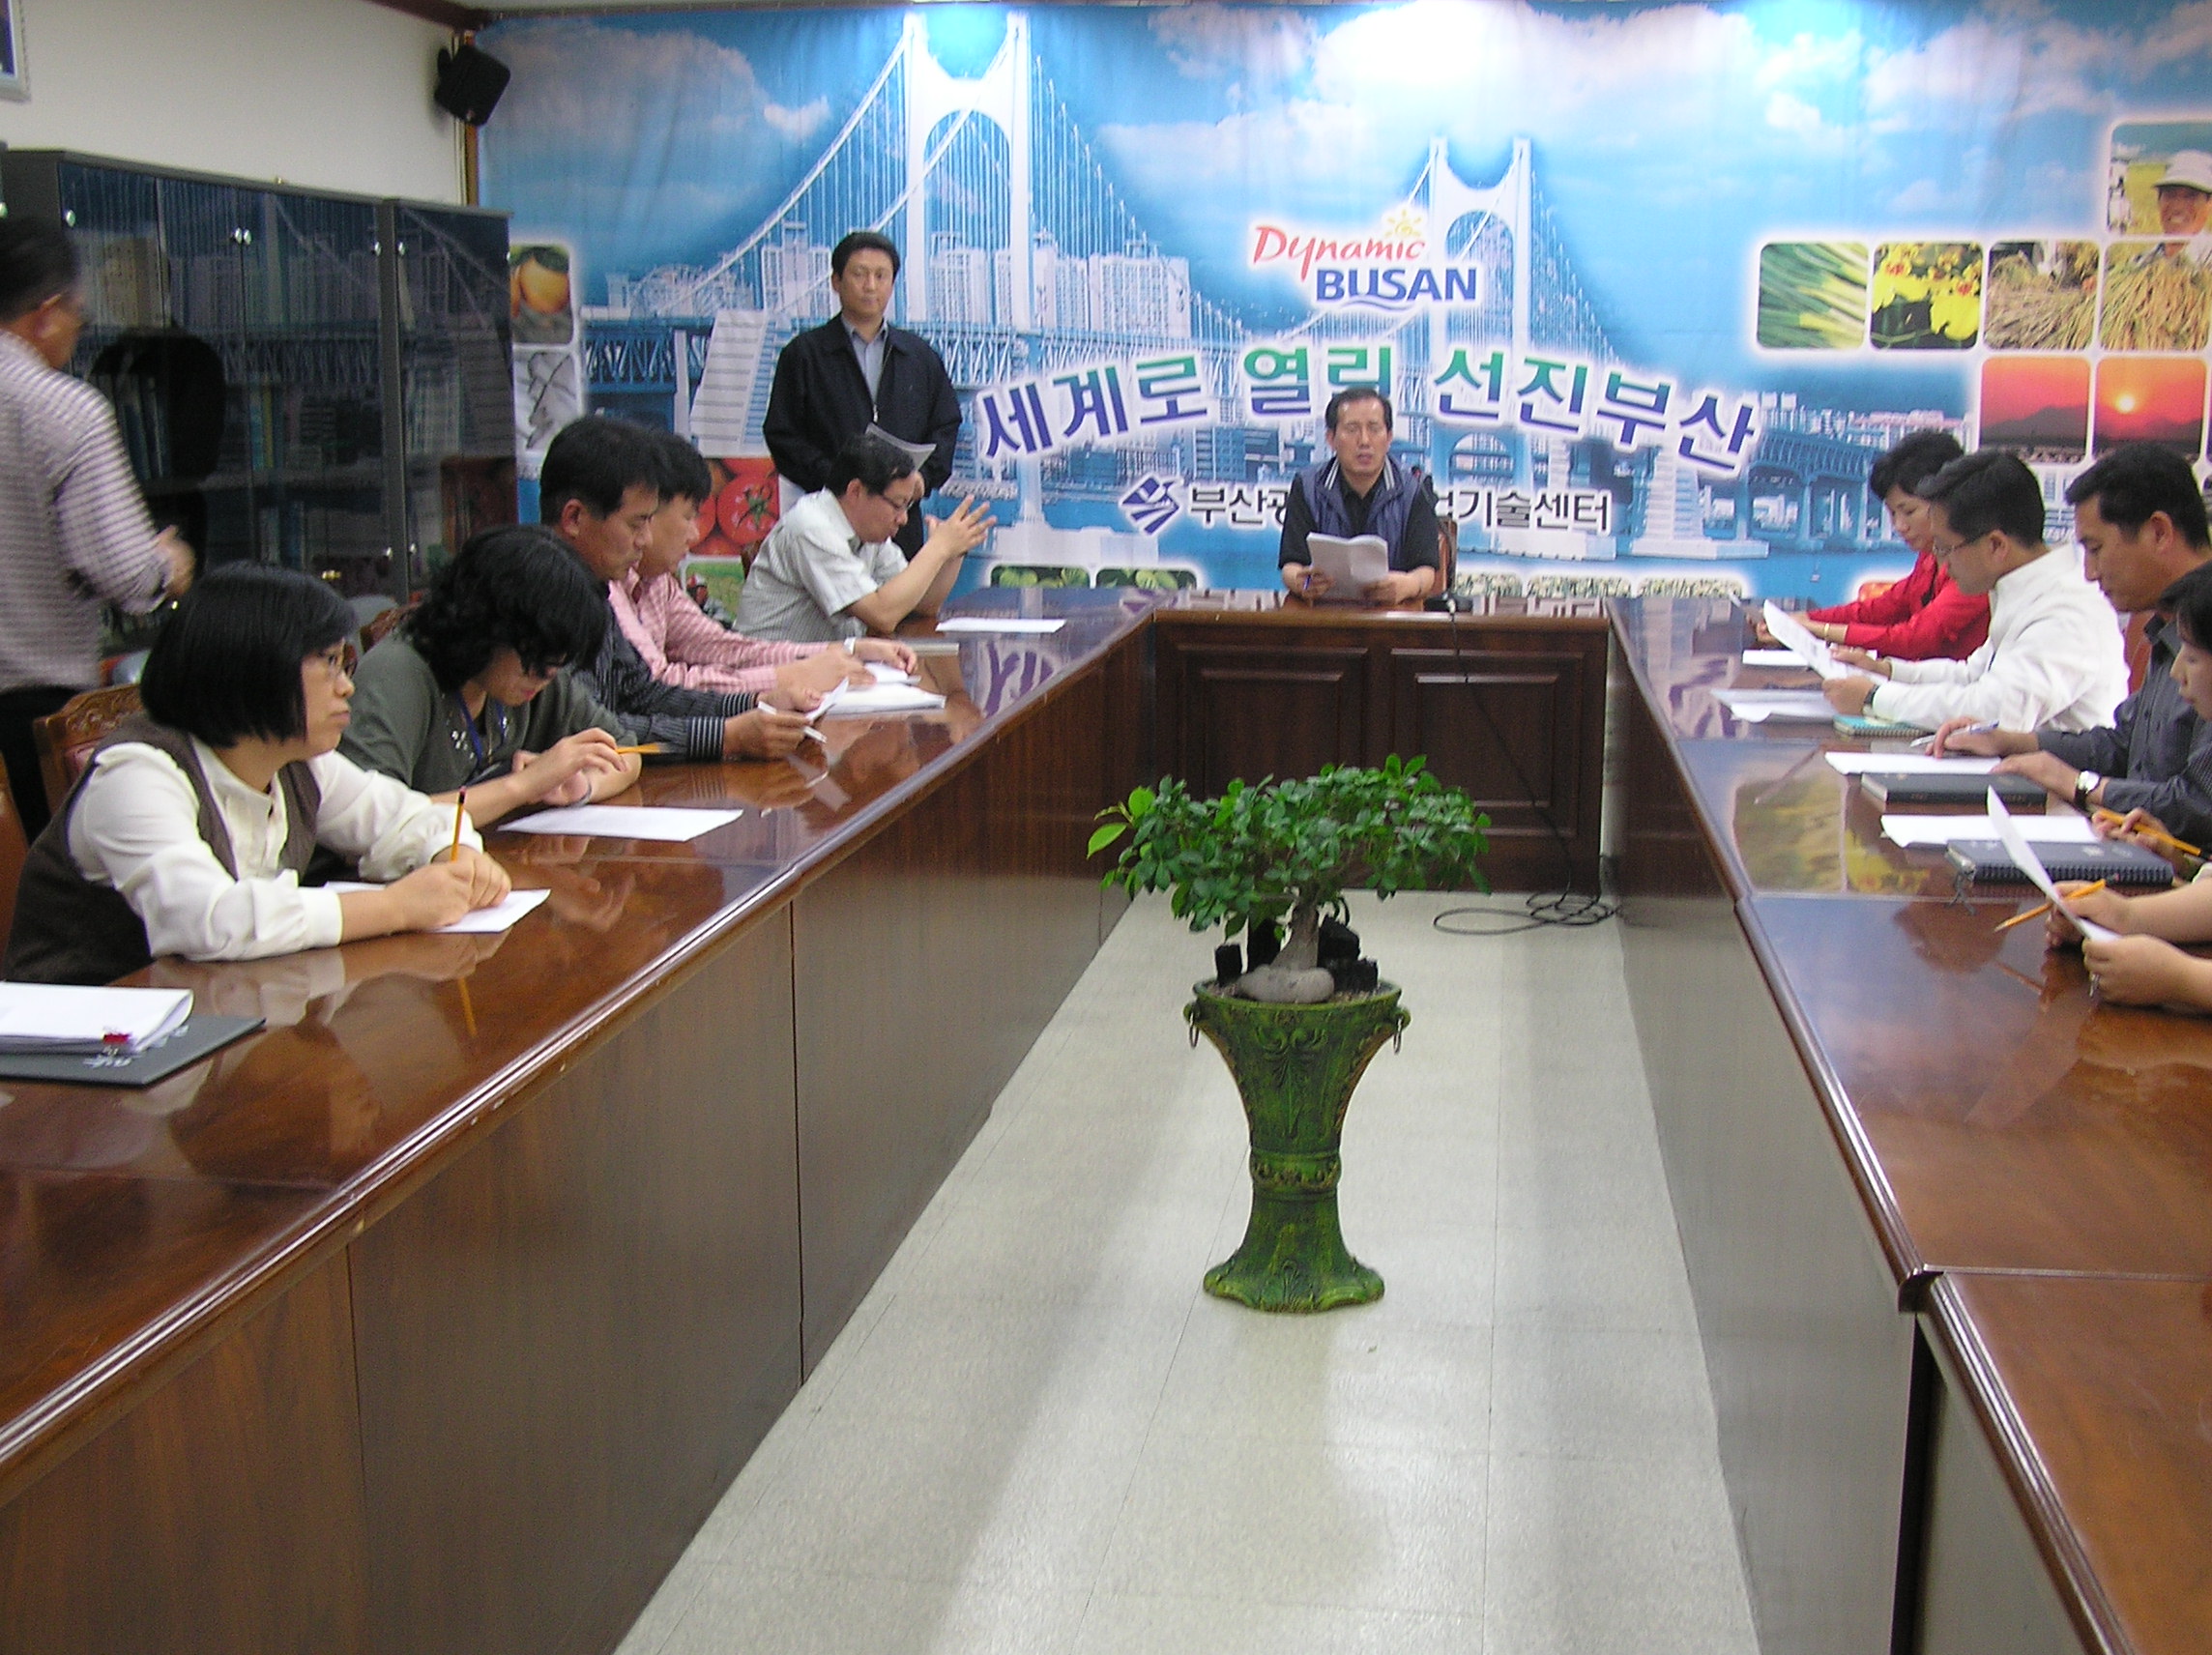 11월22일 연금투쟁 승리를 위한 사업소 순회 조합원 간담회 개최(1일차)